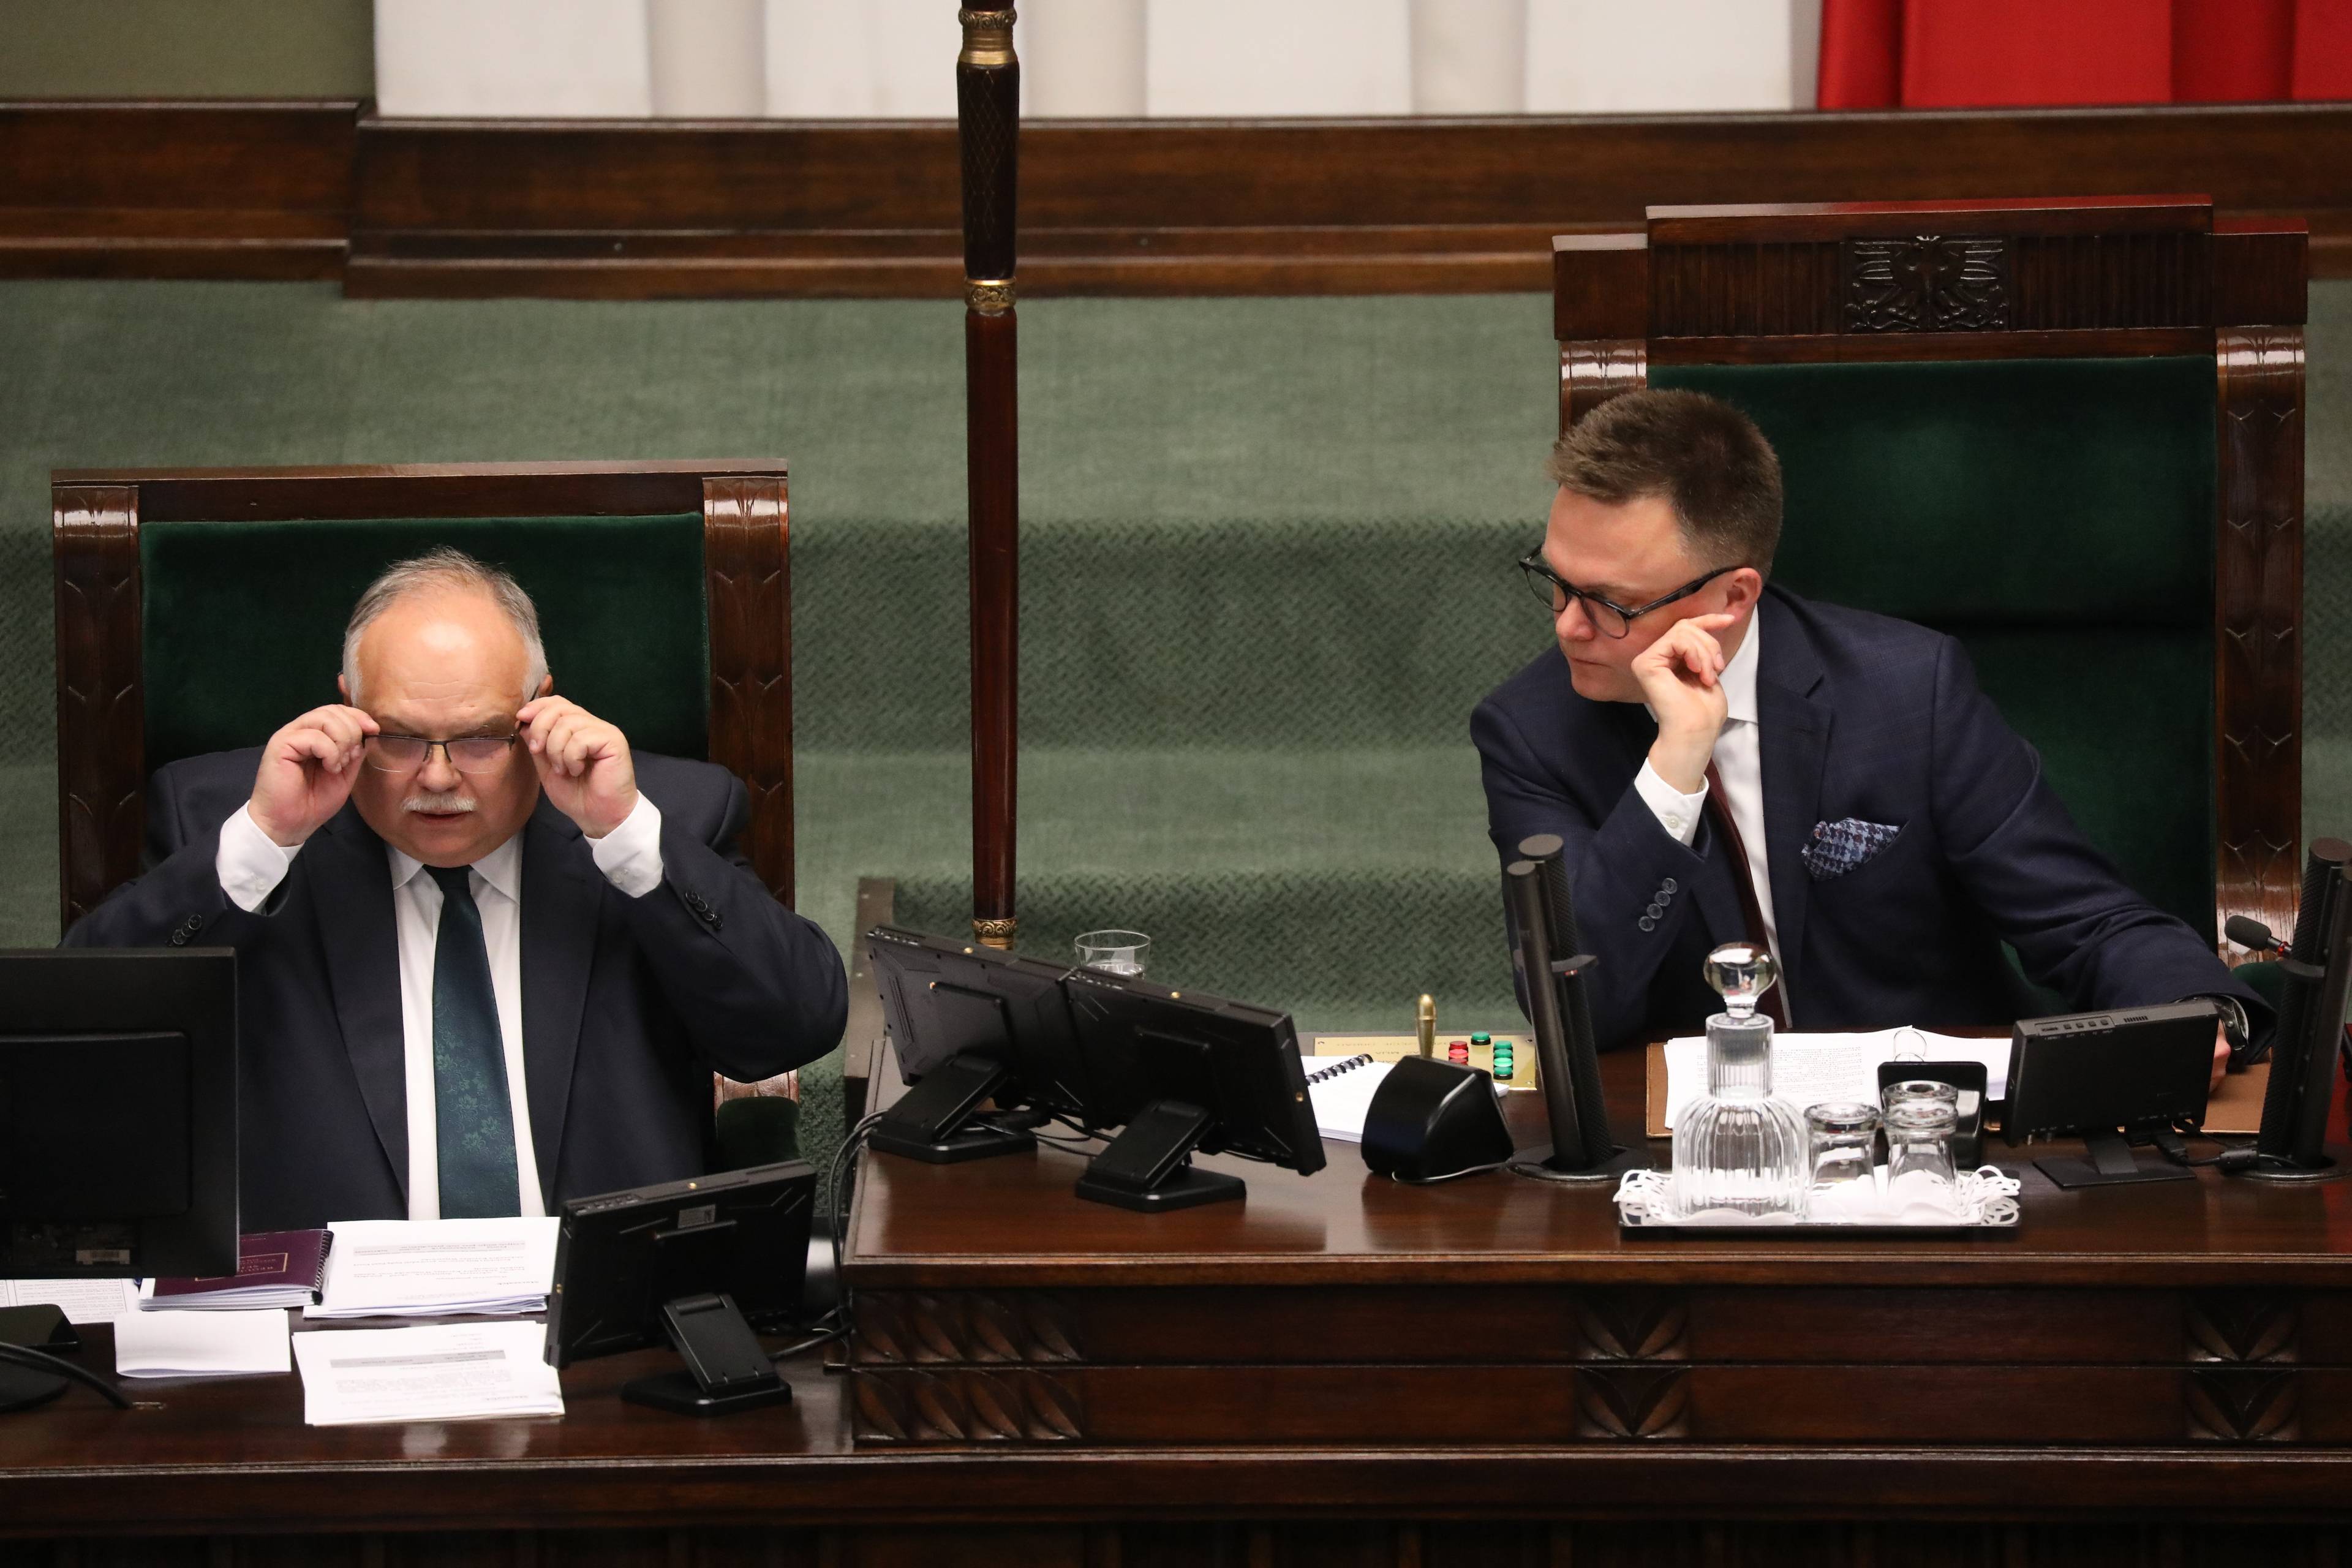 Marszałek Sejmu Szymon Hołownia za stołem prezydialnym na sali plenarnej w Sejmie